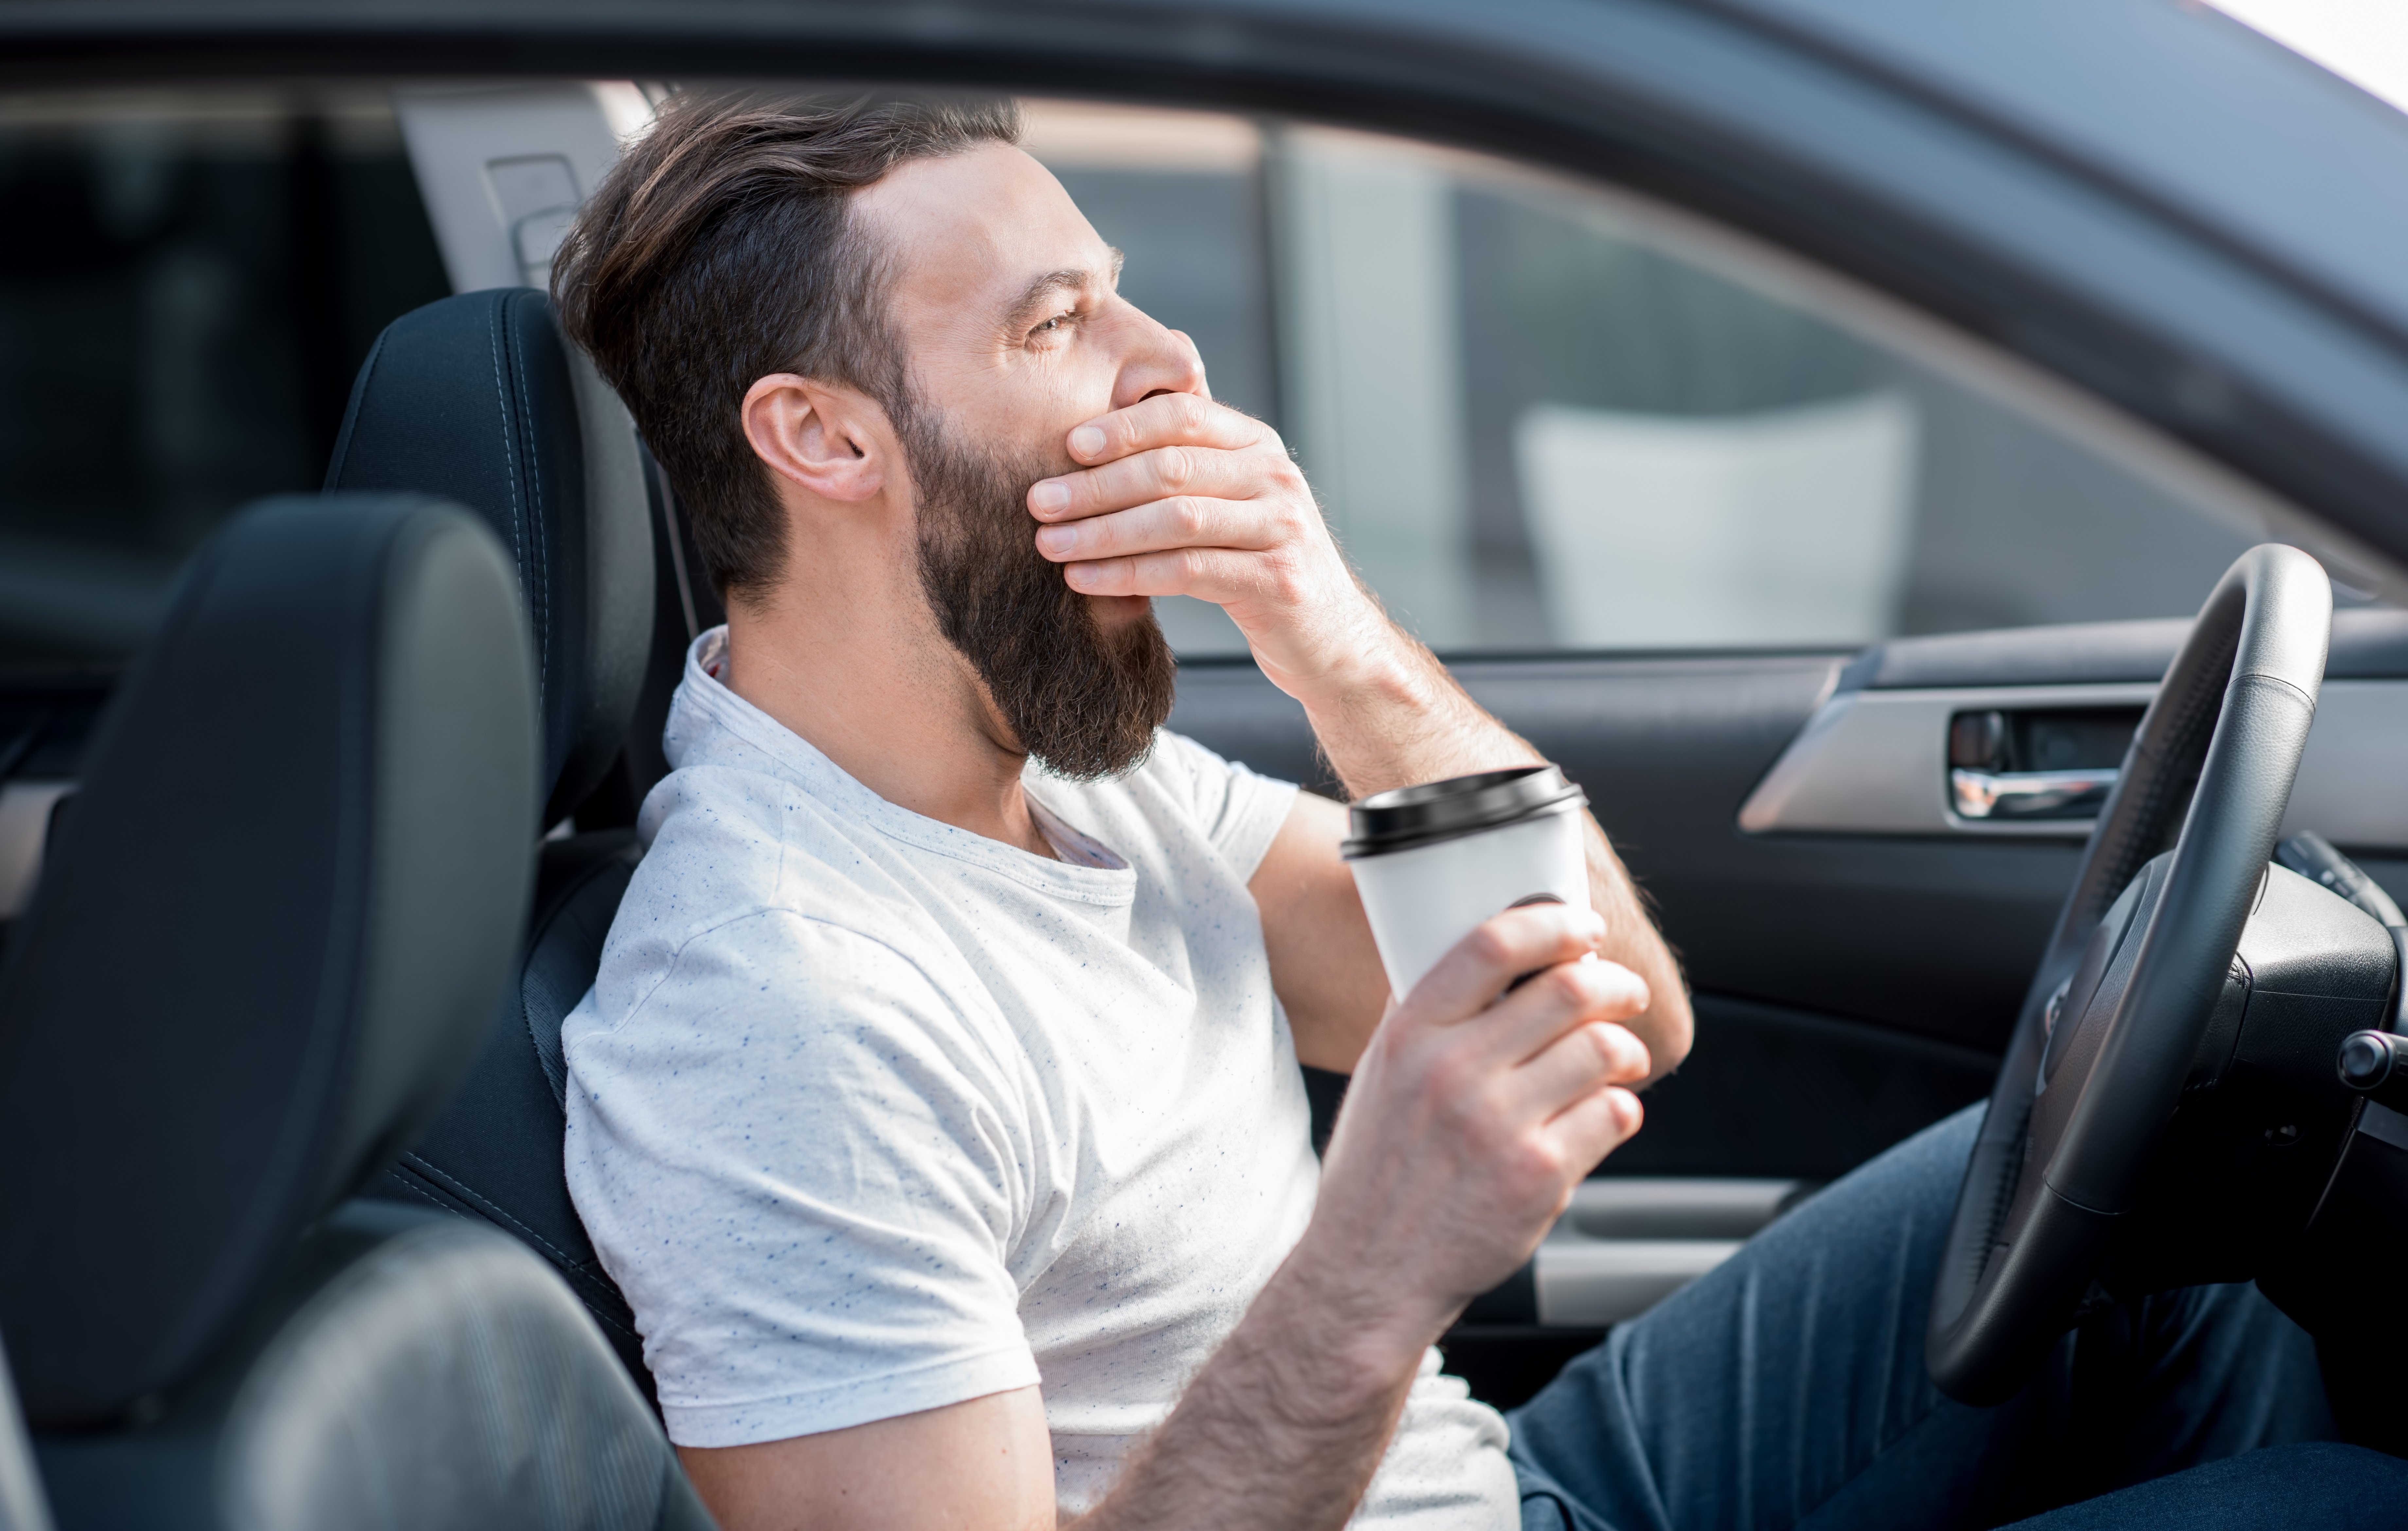 Únava za volantem? Kafe nepomůže! Jak zabránit mikrospánku při řízení?